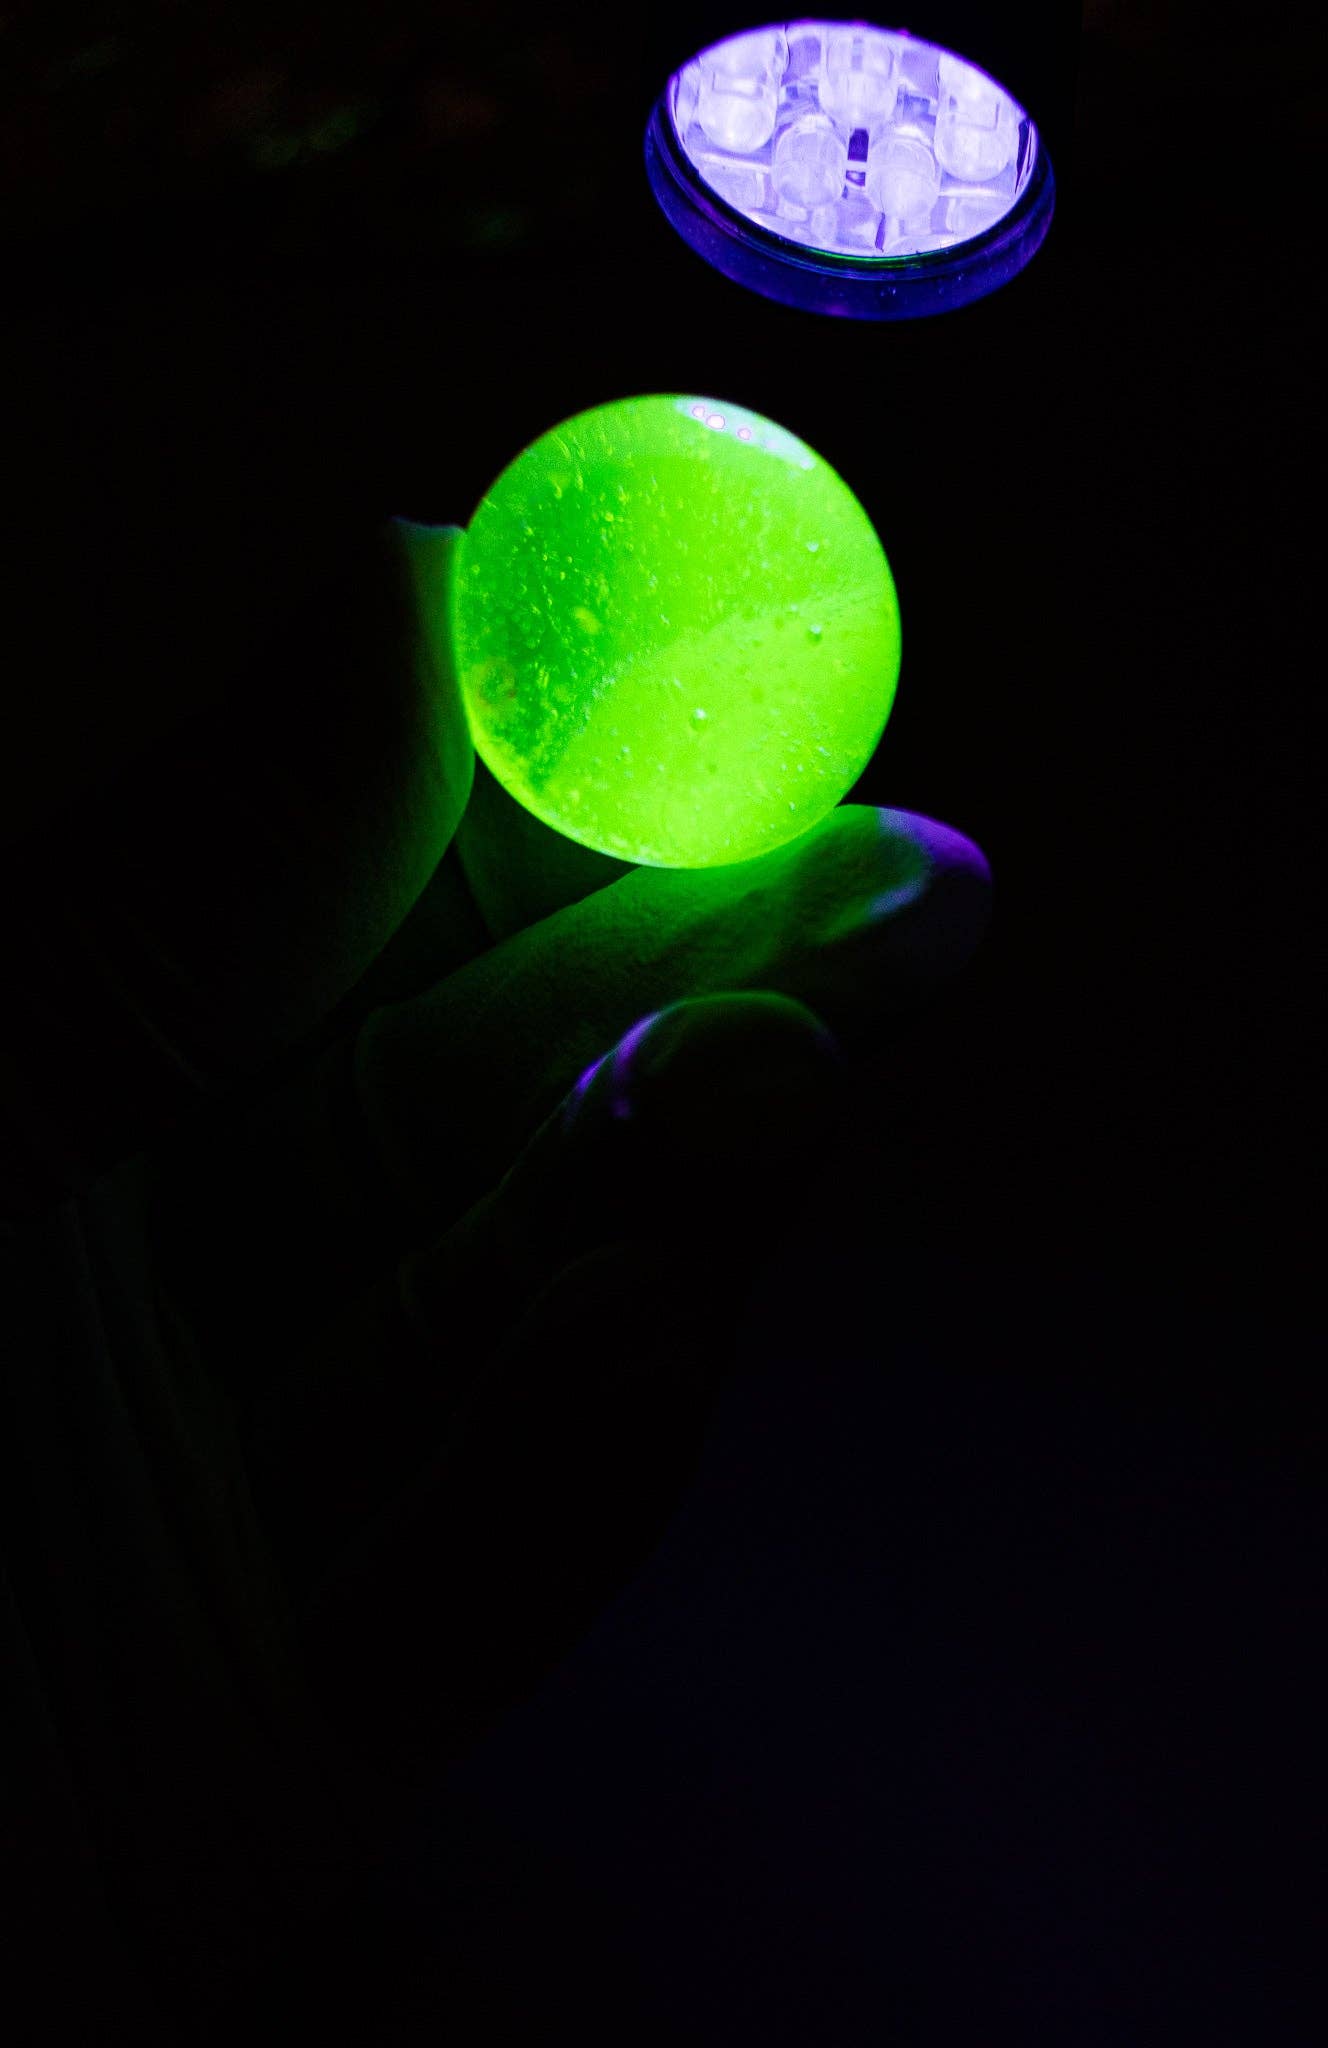 Yellow Uranium Glass Ball